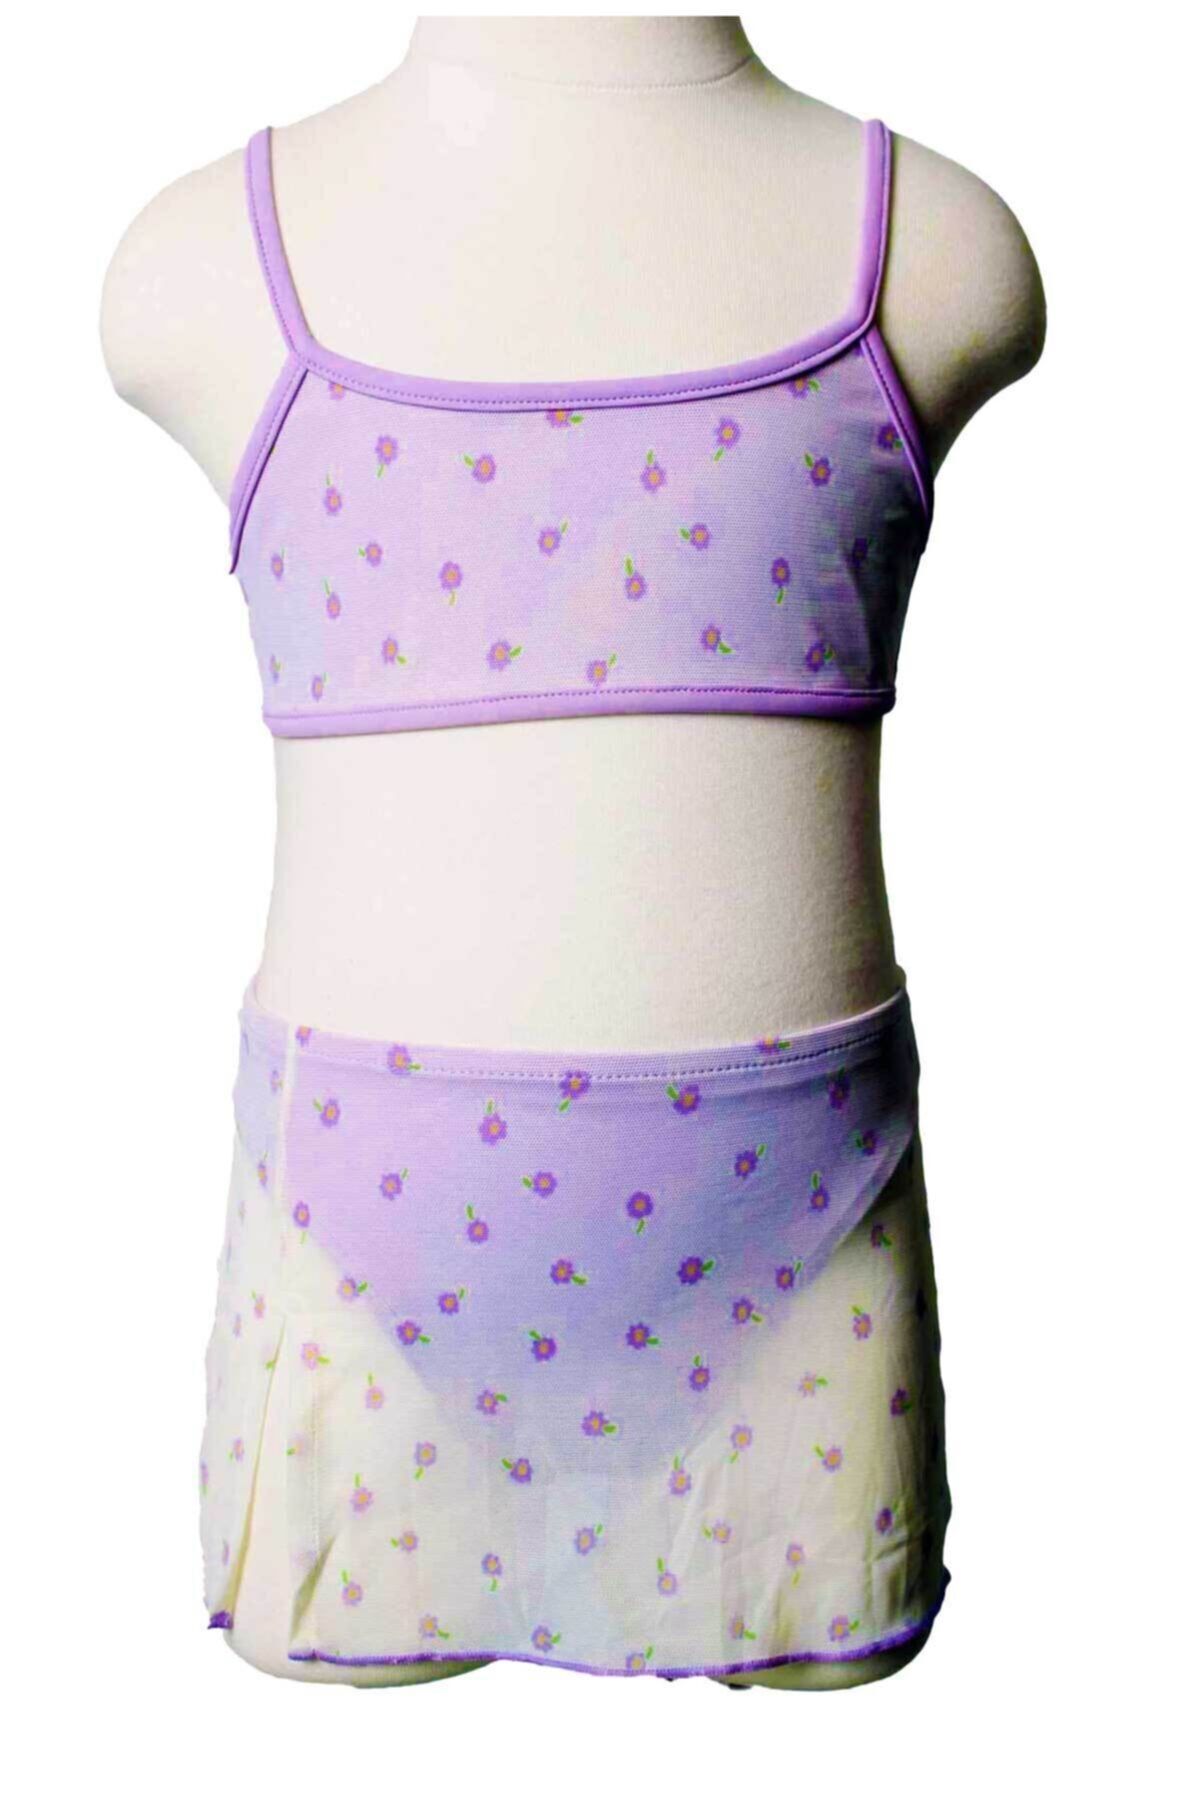 Sude Ayl Kız Çocuk Bustiyer Model Tül Etekli Empirme Alt Üst Bikini Takım 193-92a